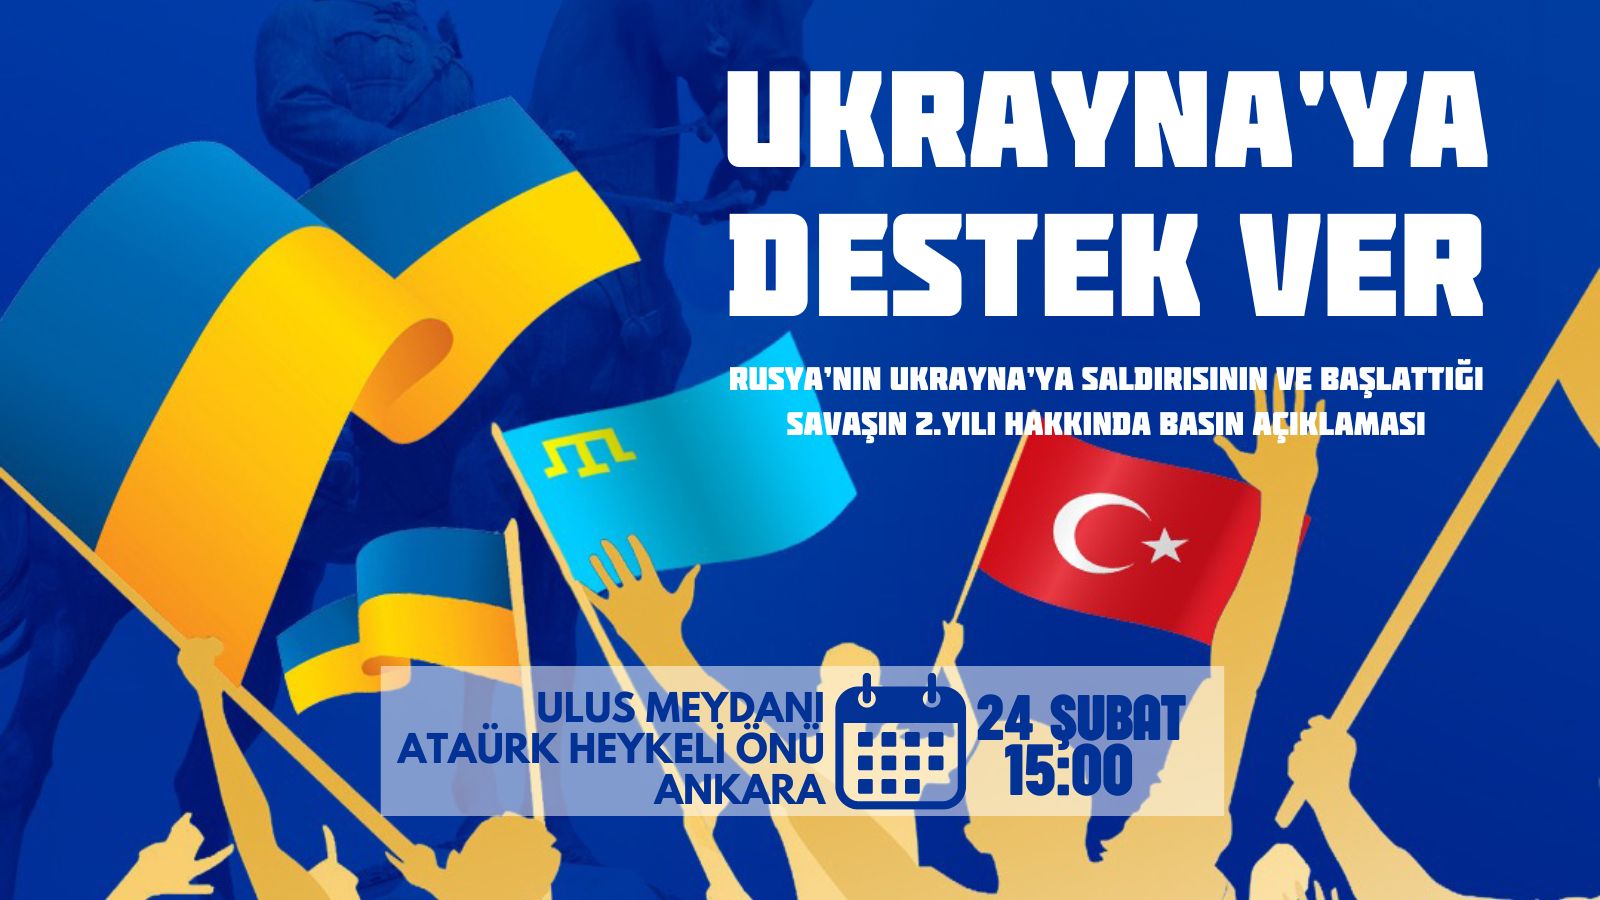 Ukrayna’ya Destek İçin 24 Şubat’ta Ulus Meydanı’ndayız